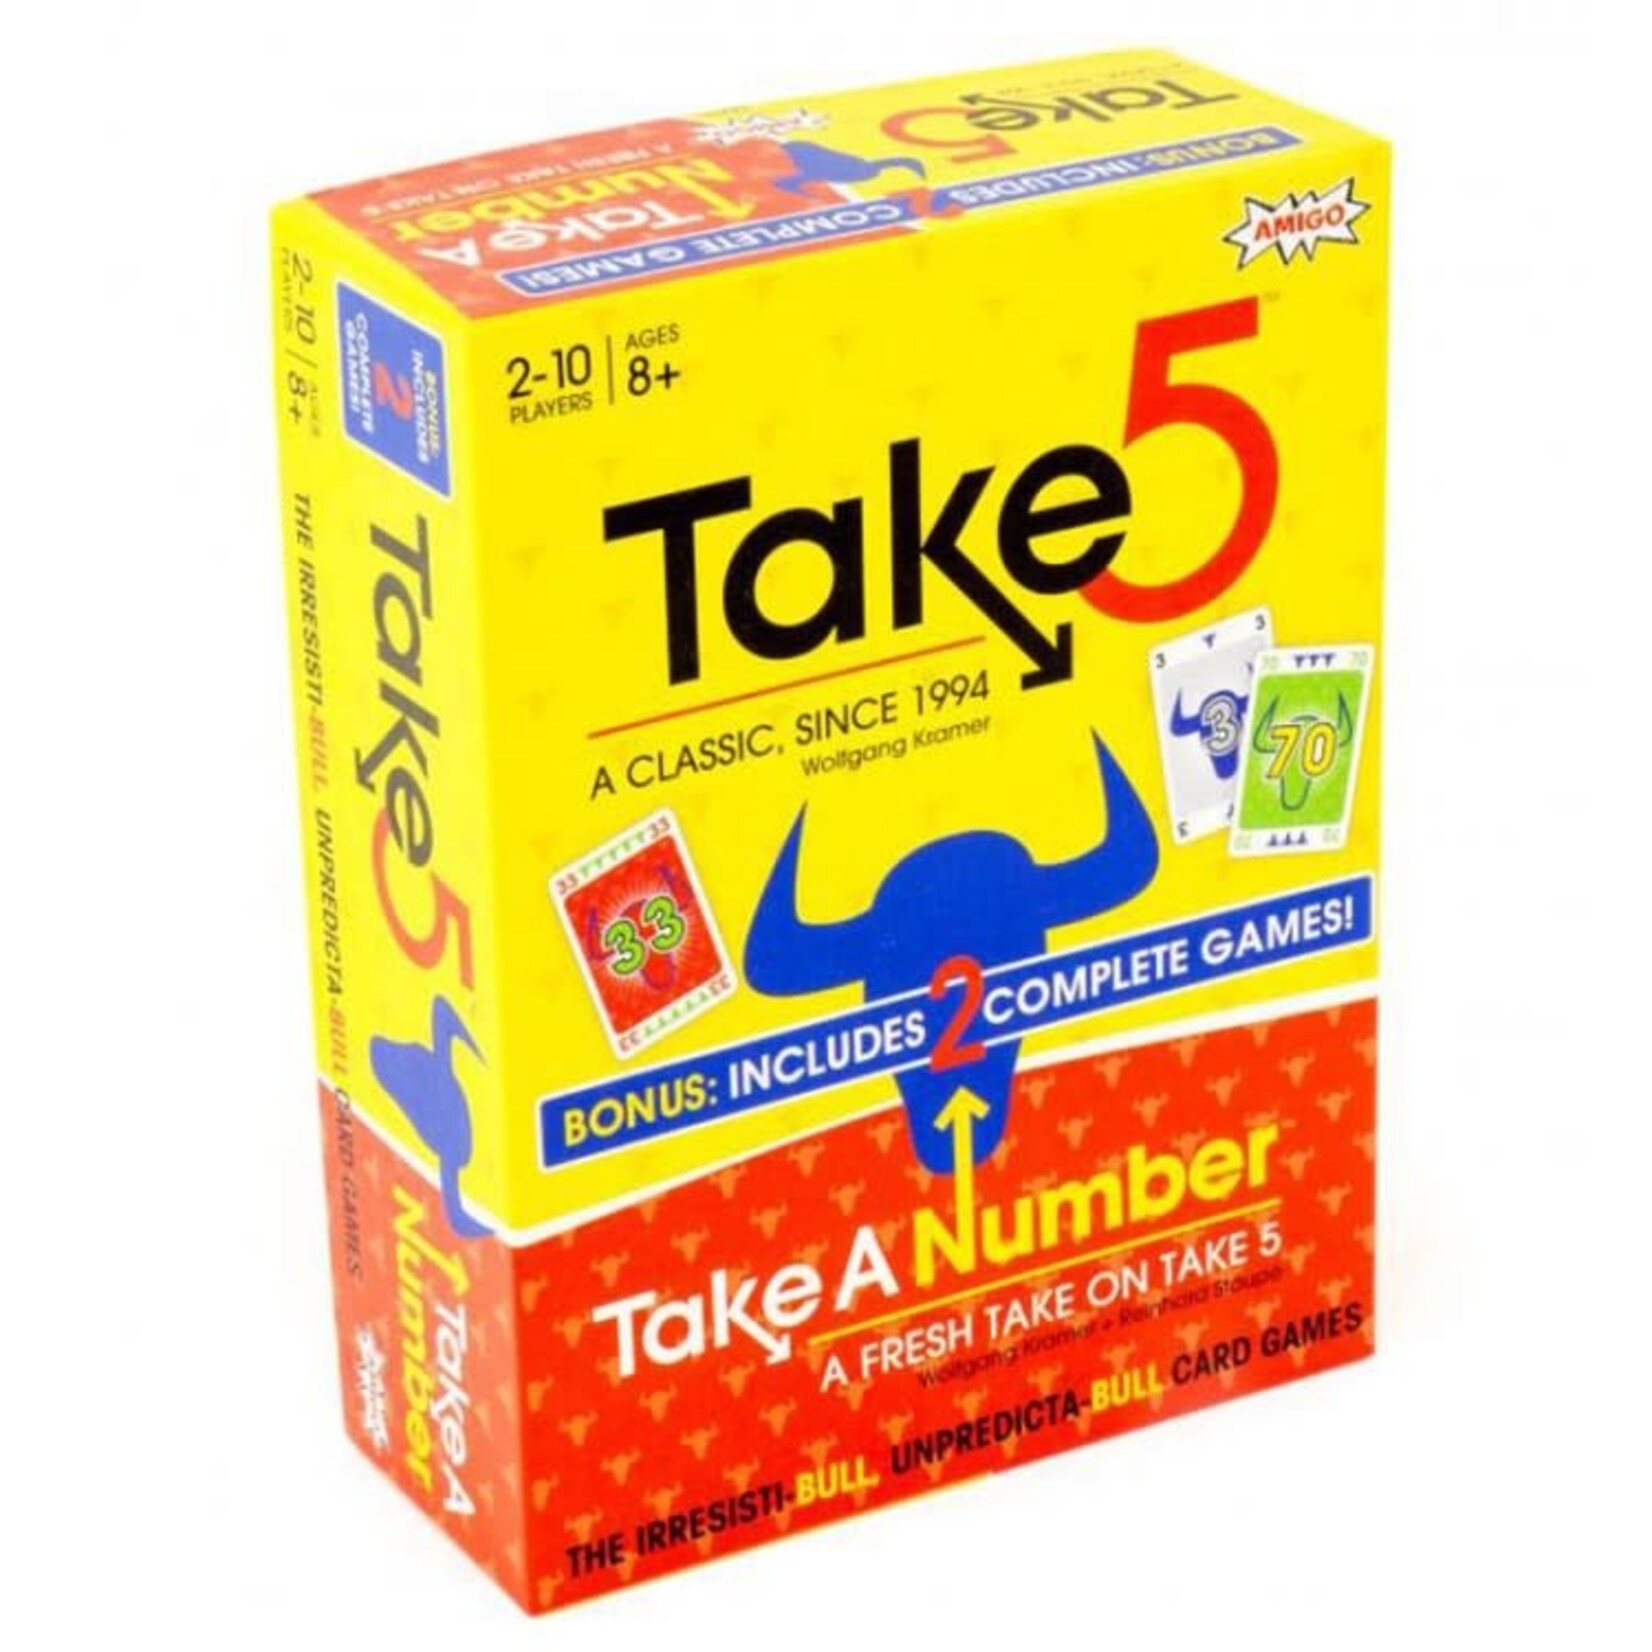 Take 5/Take a Number